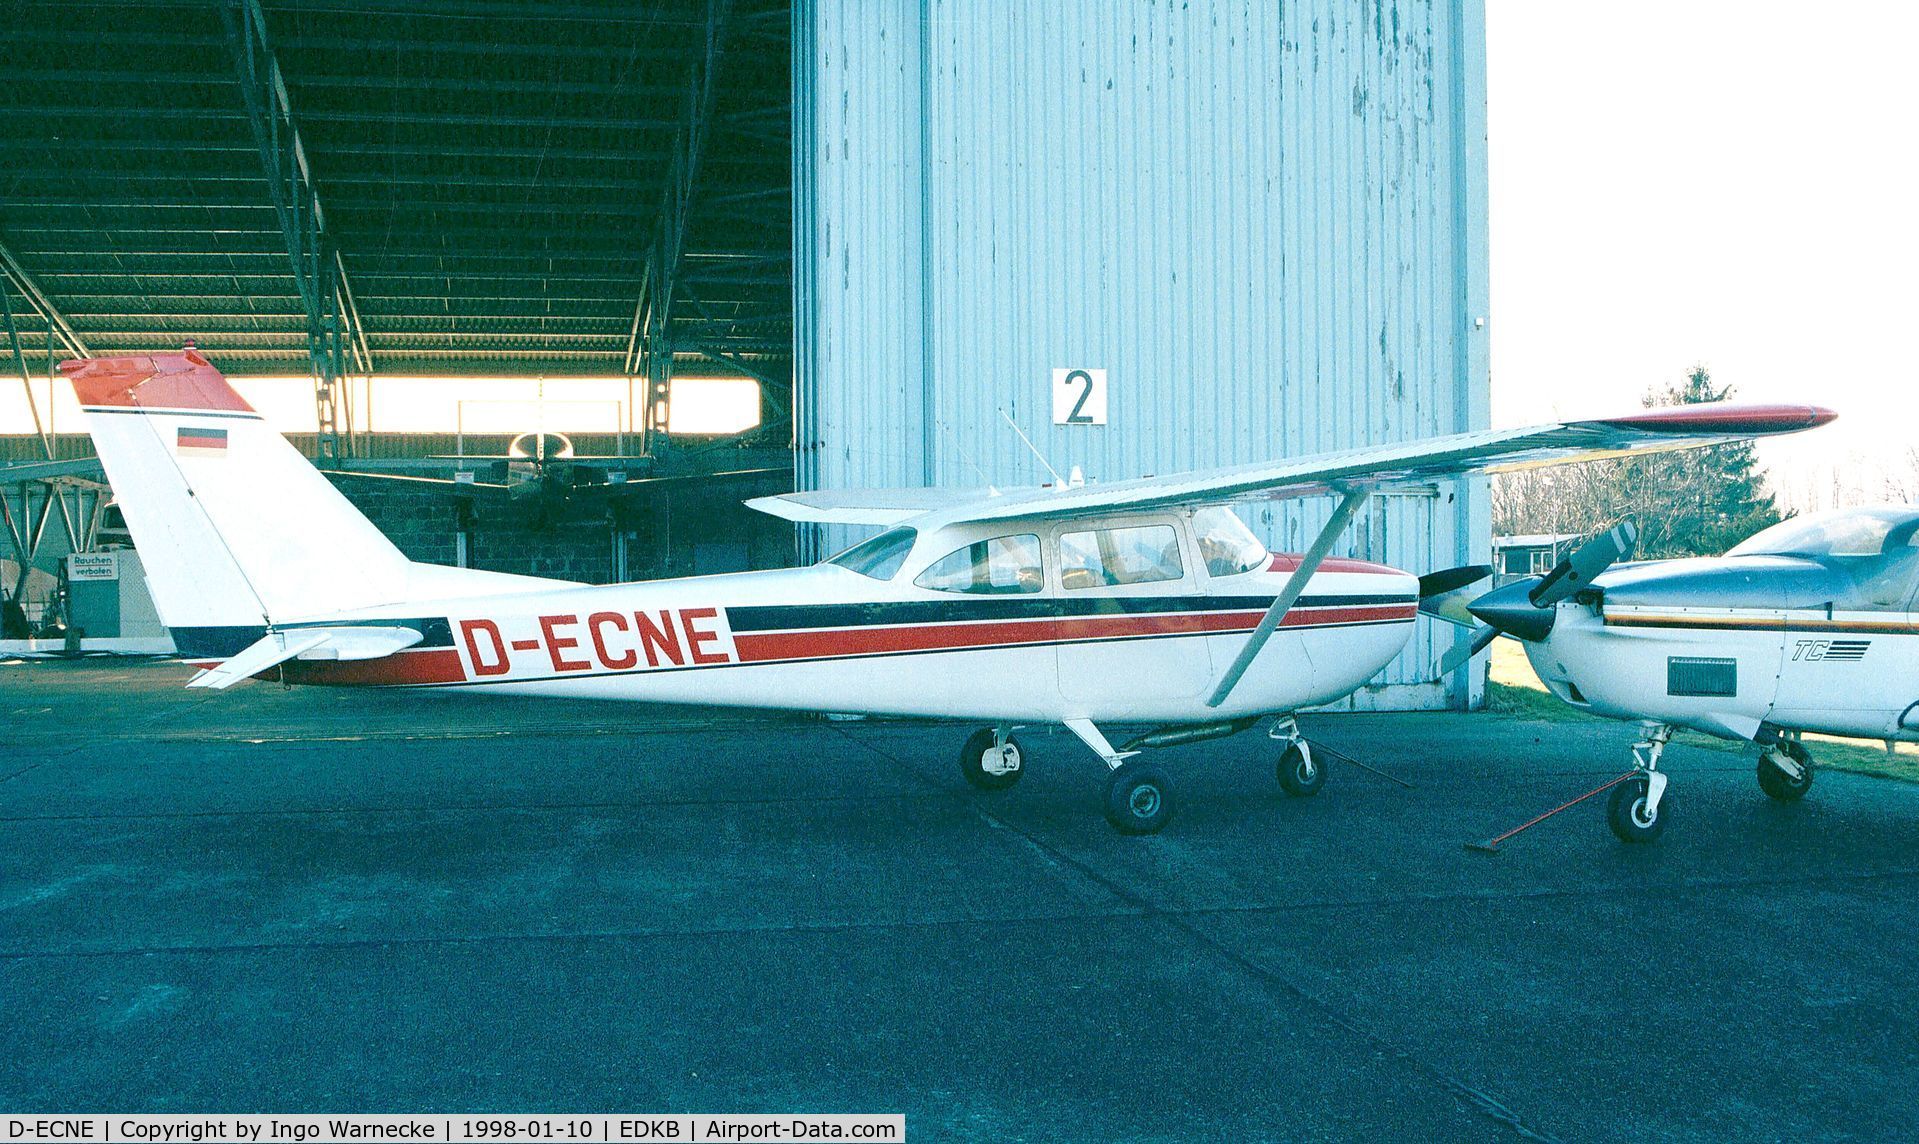 D-ECNE, 1965 Reims F172G C/N 0234, Cessna (Reims) F172G Skyhawk at Bonn-Hangelar airfield